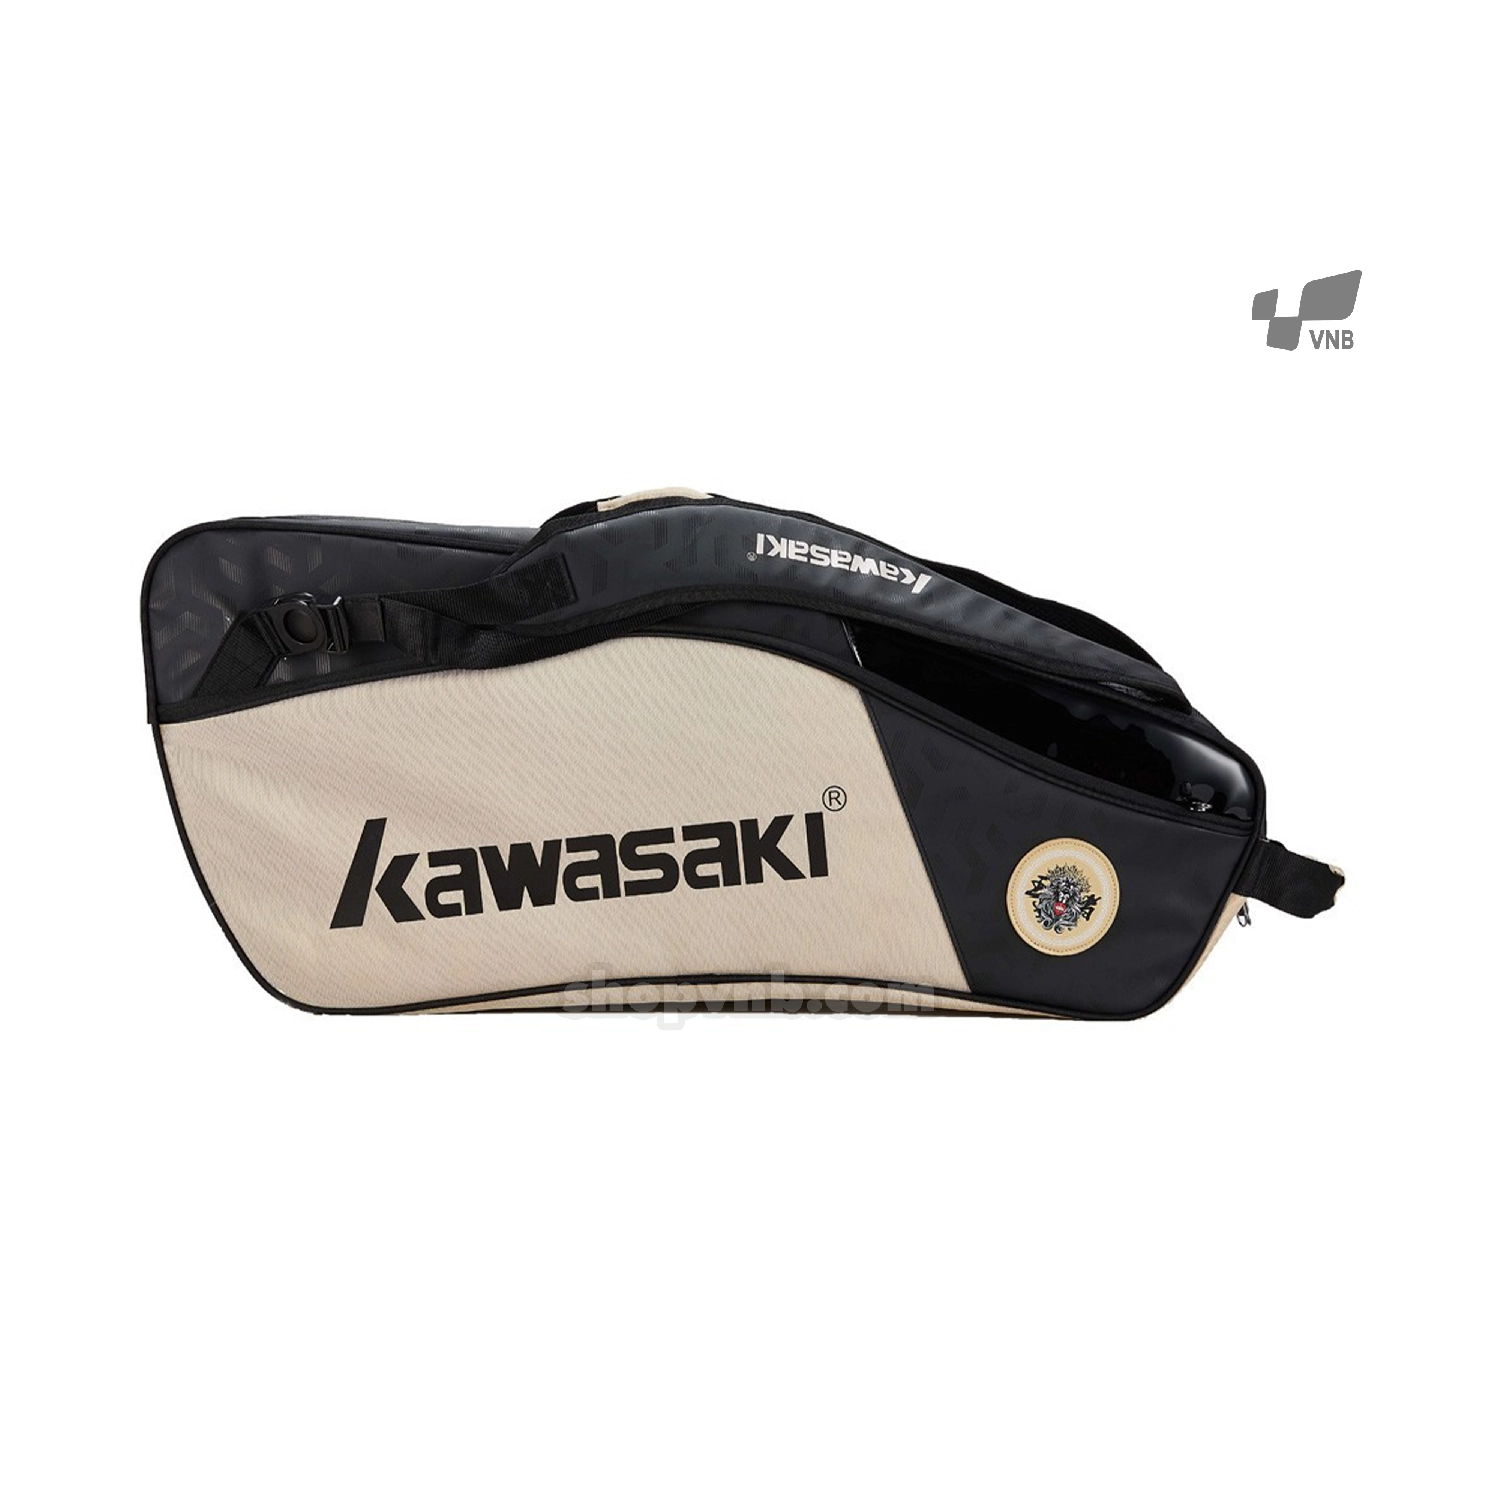 Bao vợt cầu lông Kawasaki 8640 chính hãng